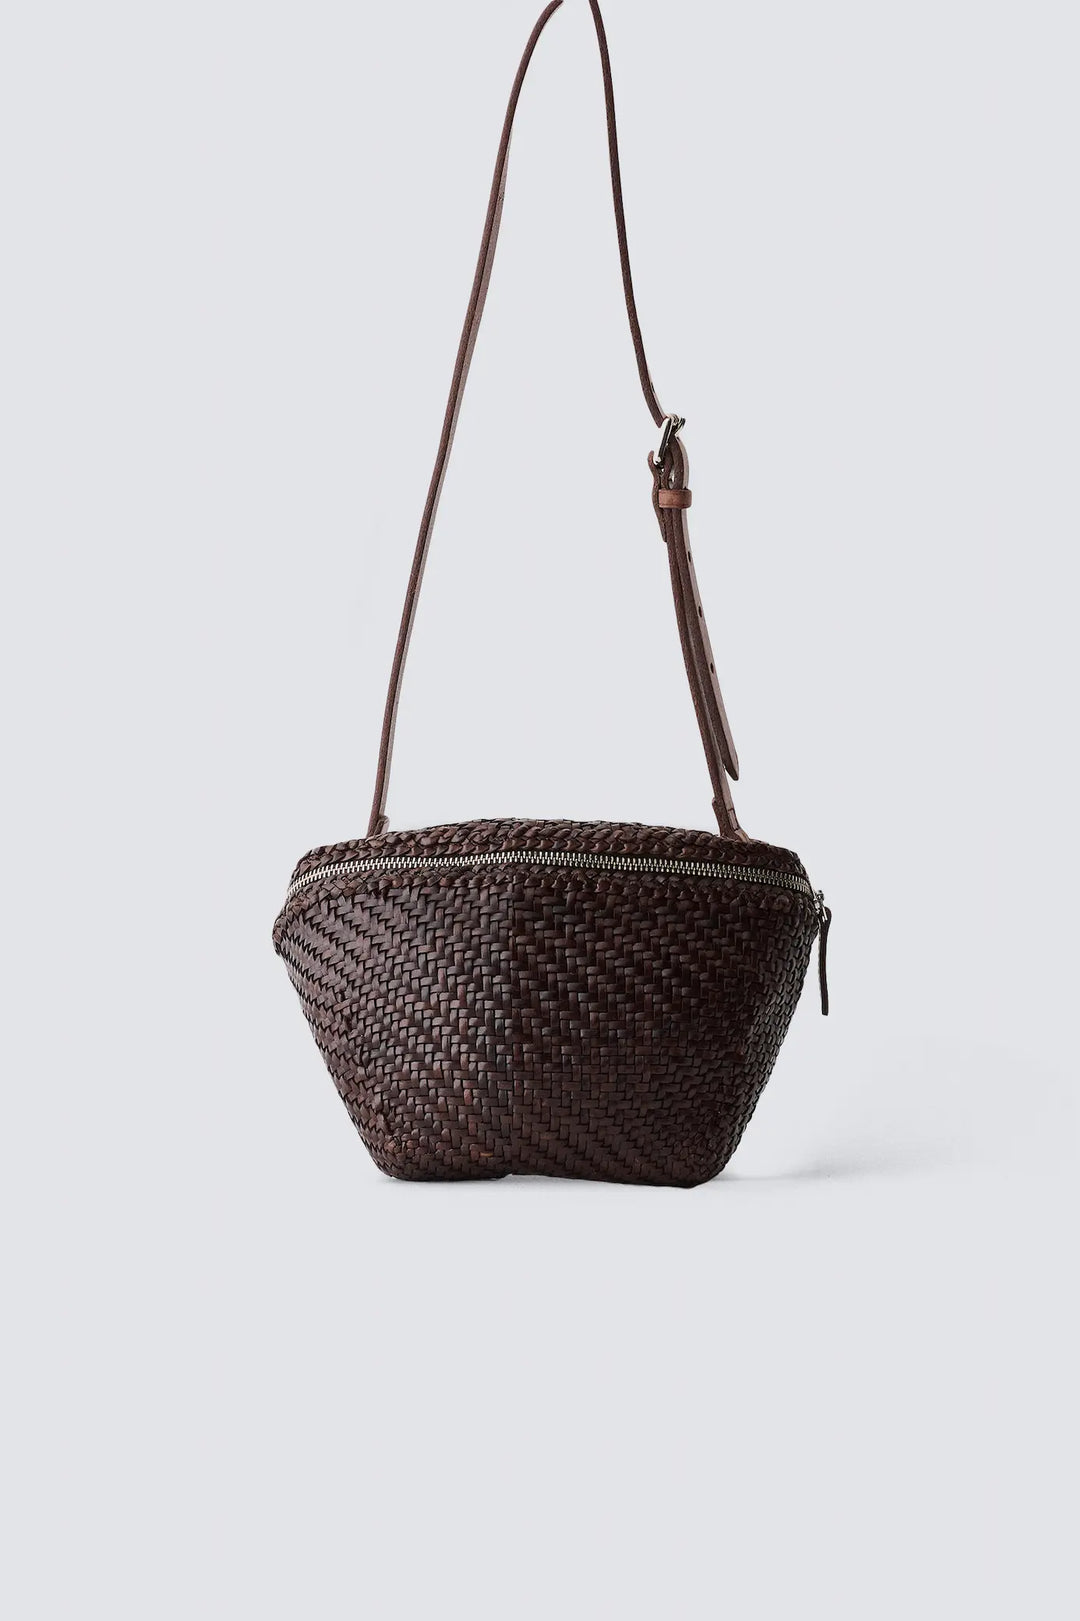 Dragon Diffusion - Clo Banane Small - Woven Leather Bag Handmade